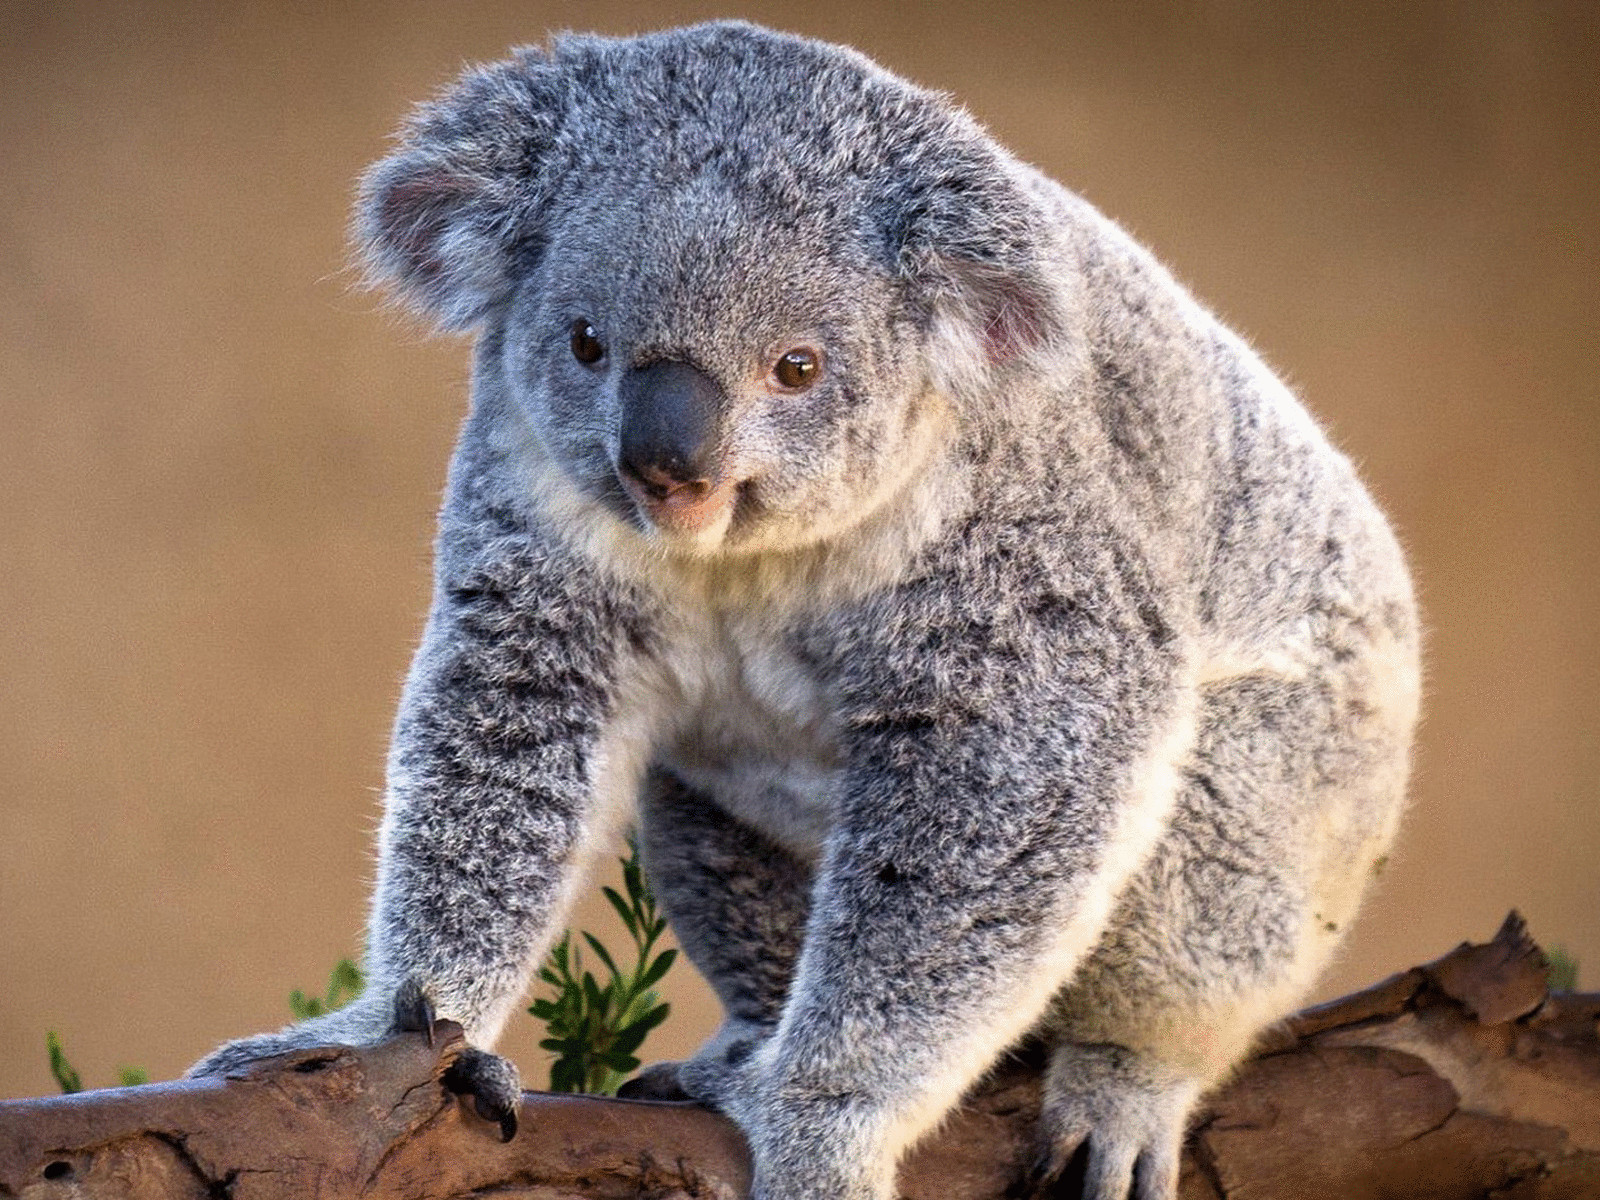 Австралийскую коалу скоро можно будет увидеть только на фотографиях